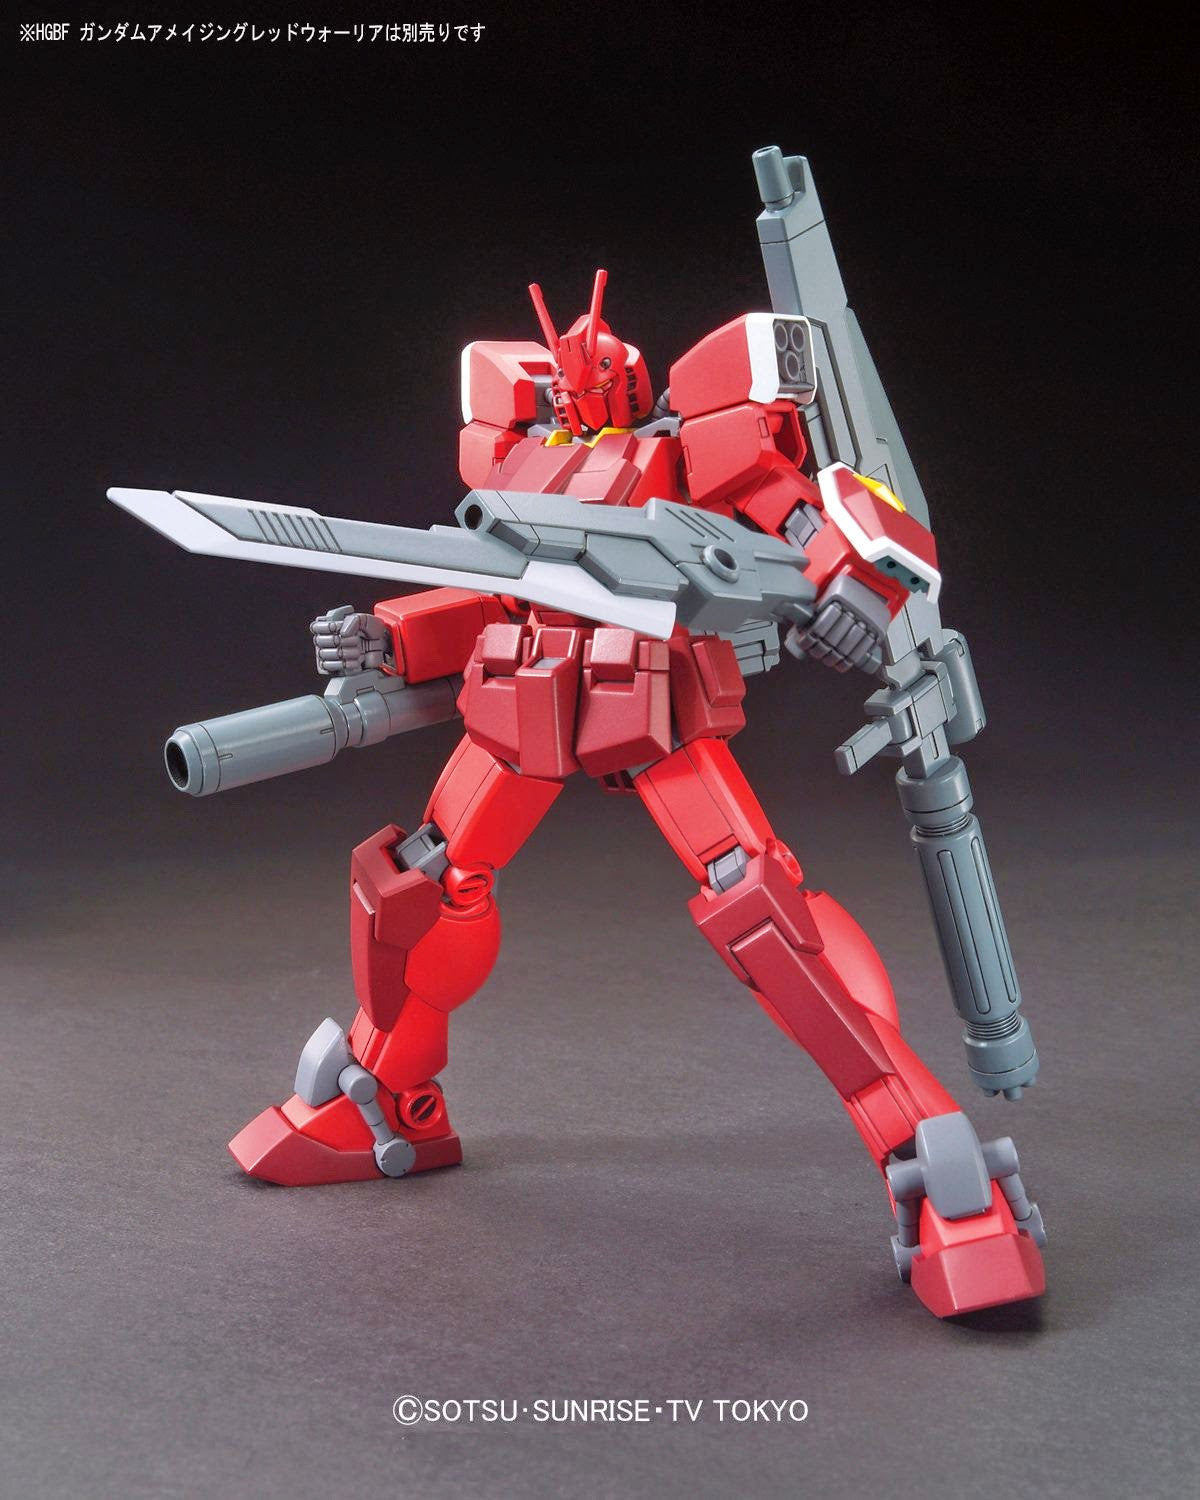 HGBF 1/144 #026 Gundam Amazing Red Warrior